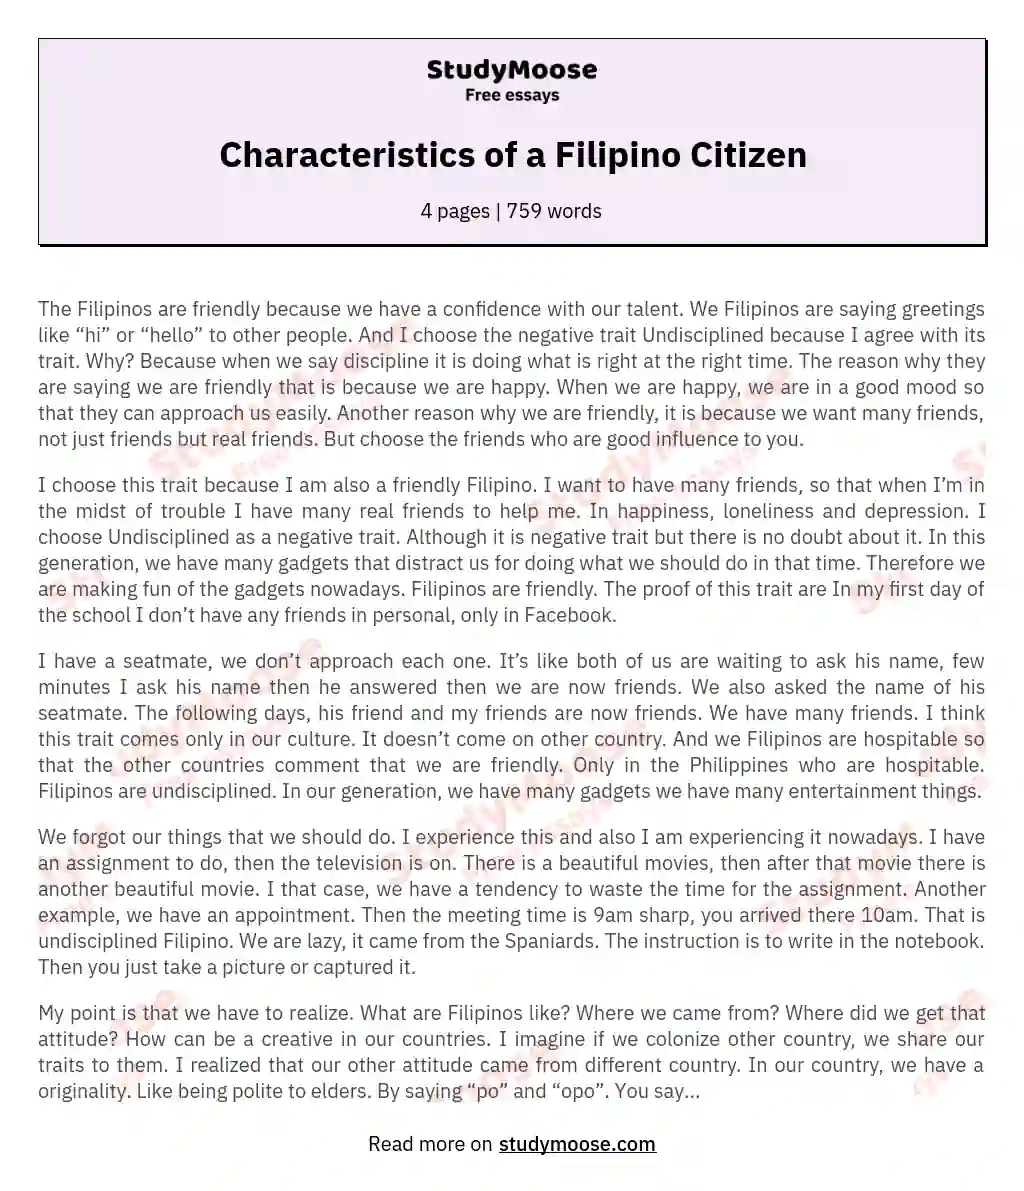 Characteristics of a Filipino Citizen essay